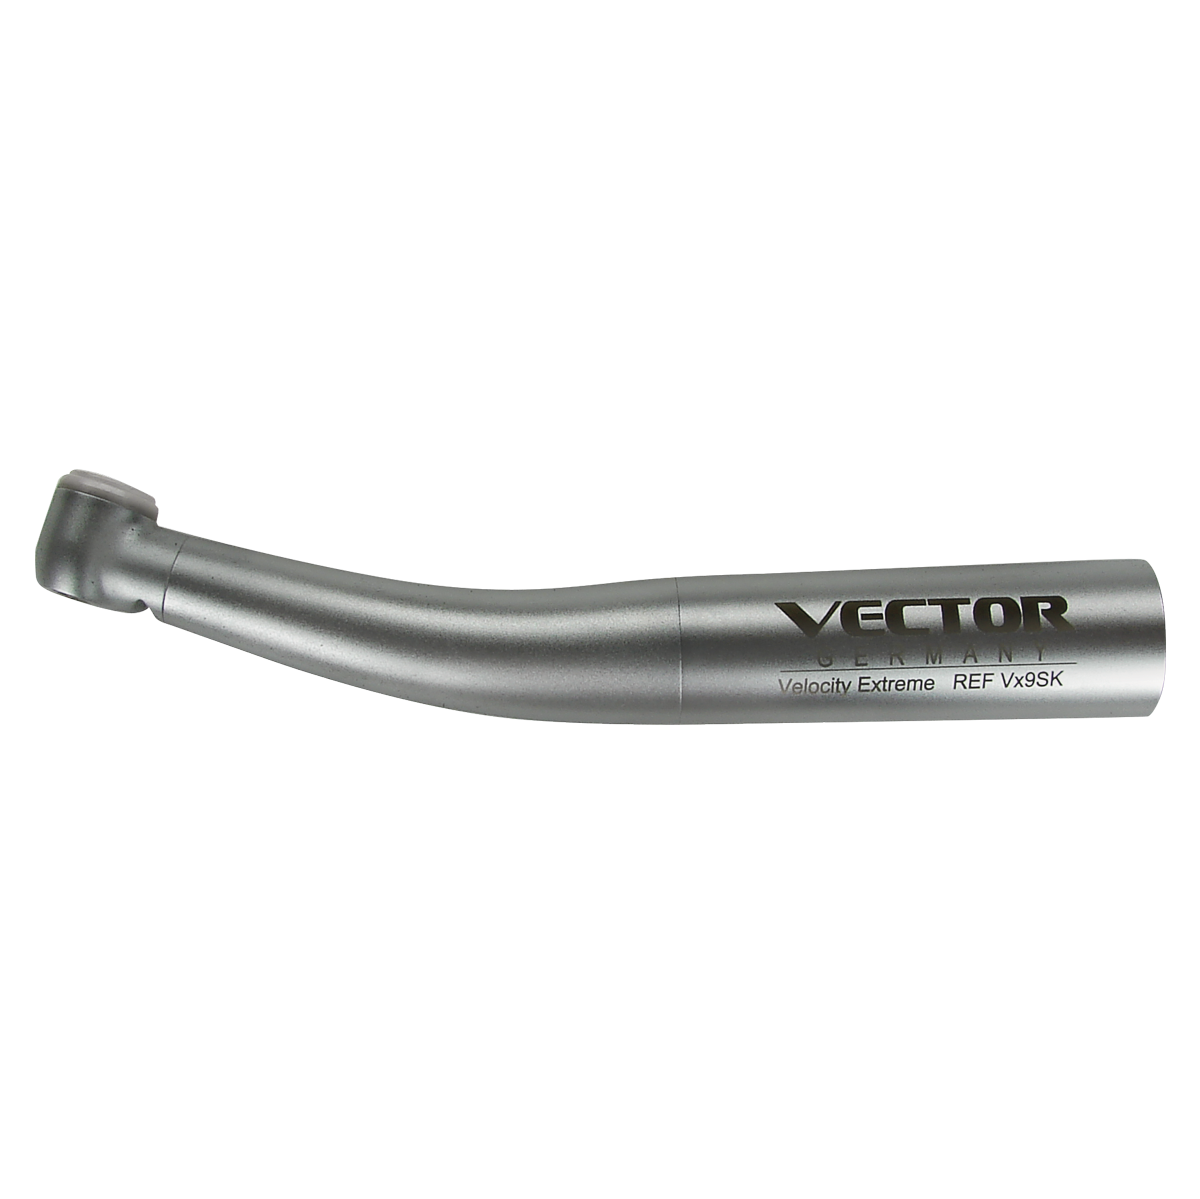 Velocity Extreme Vx9 Non-Optic Handpiece